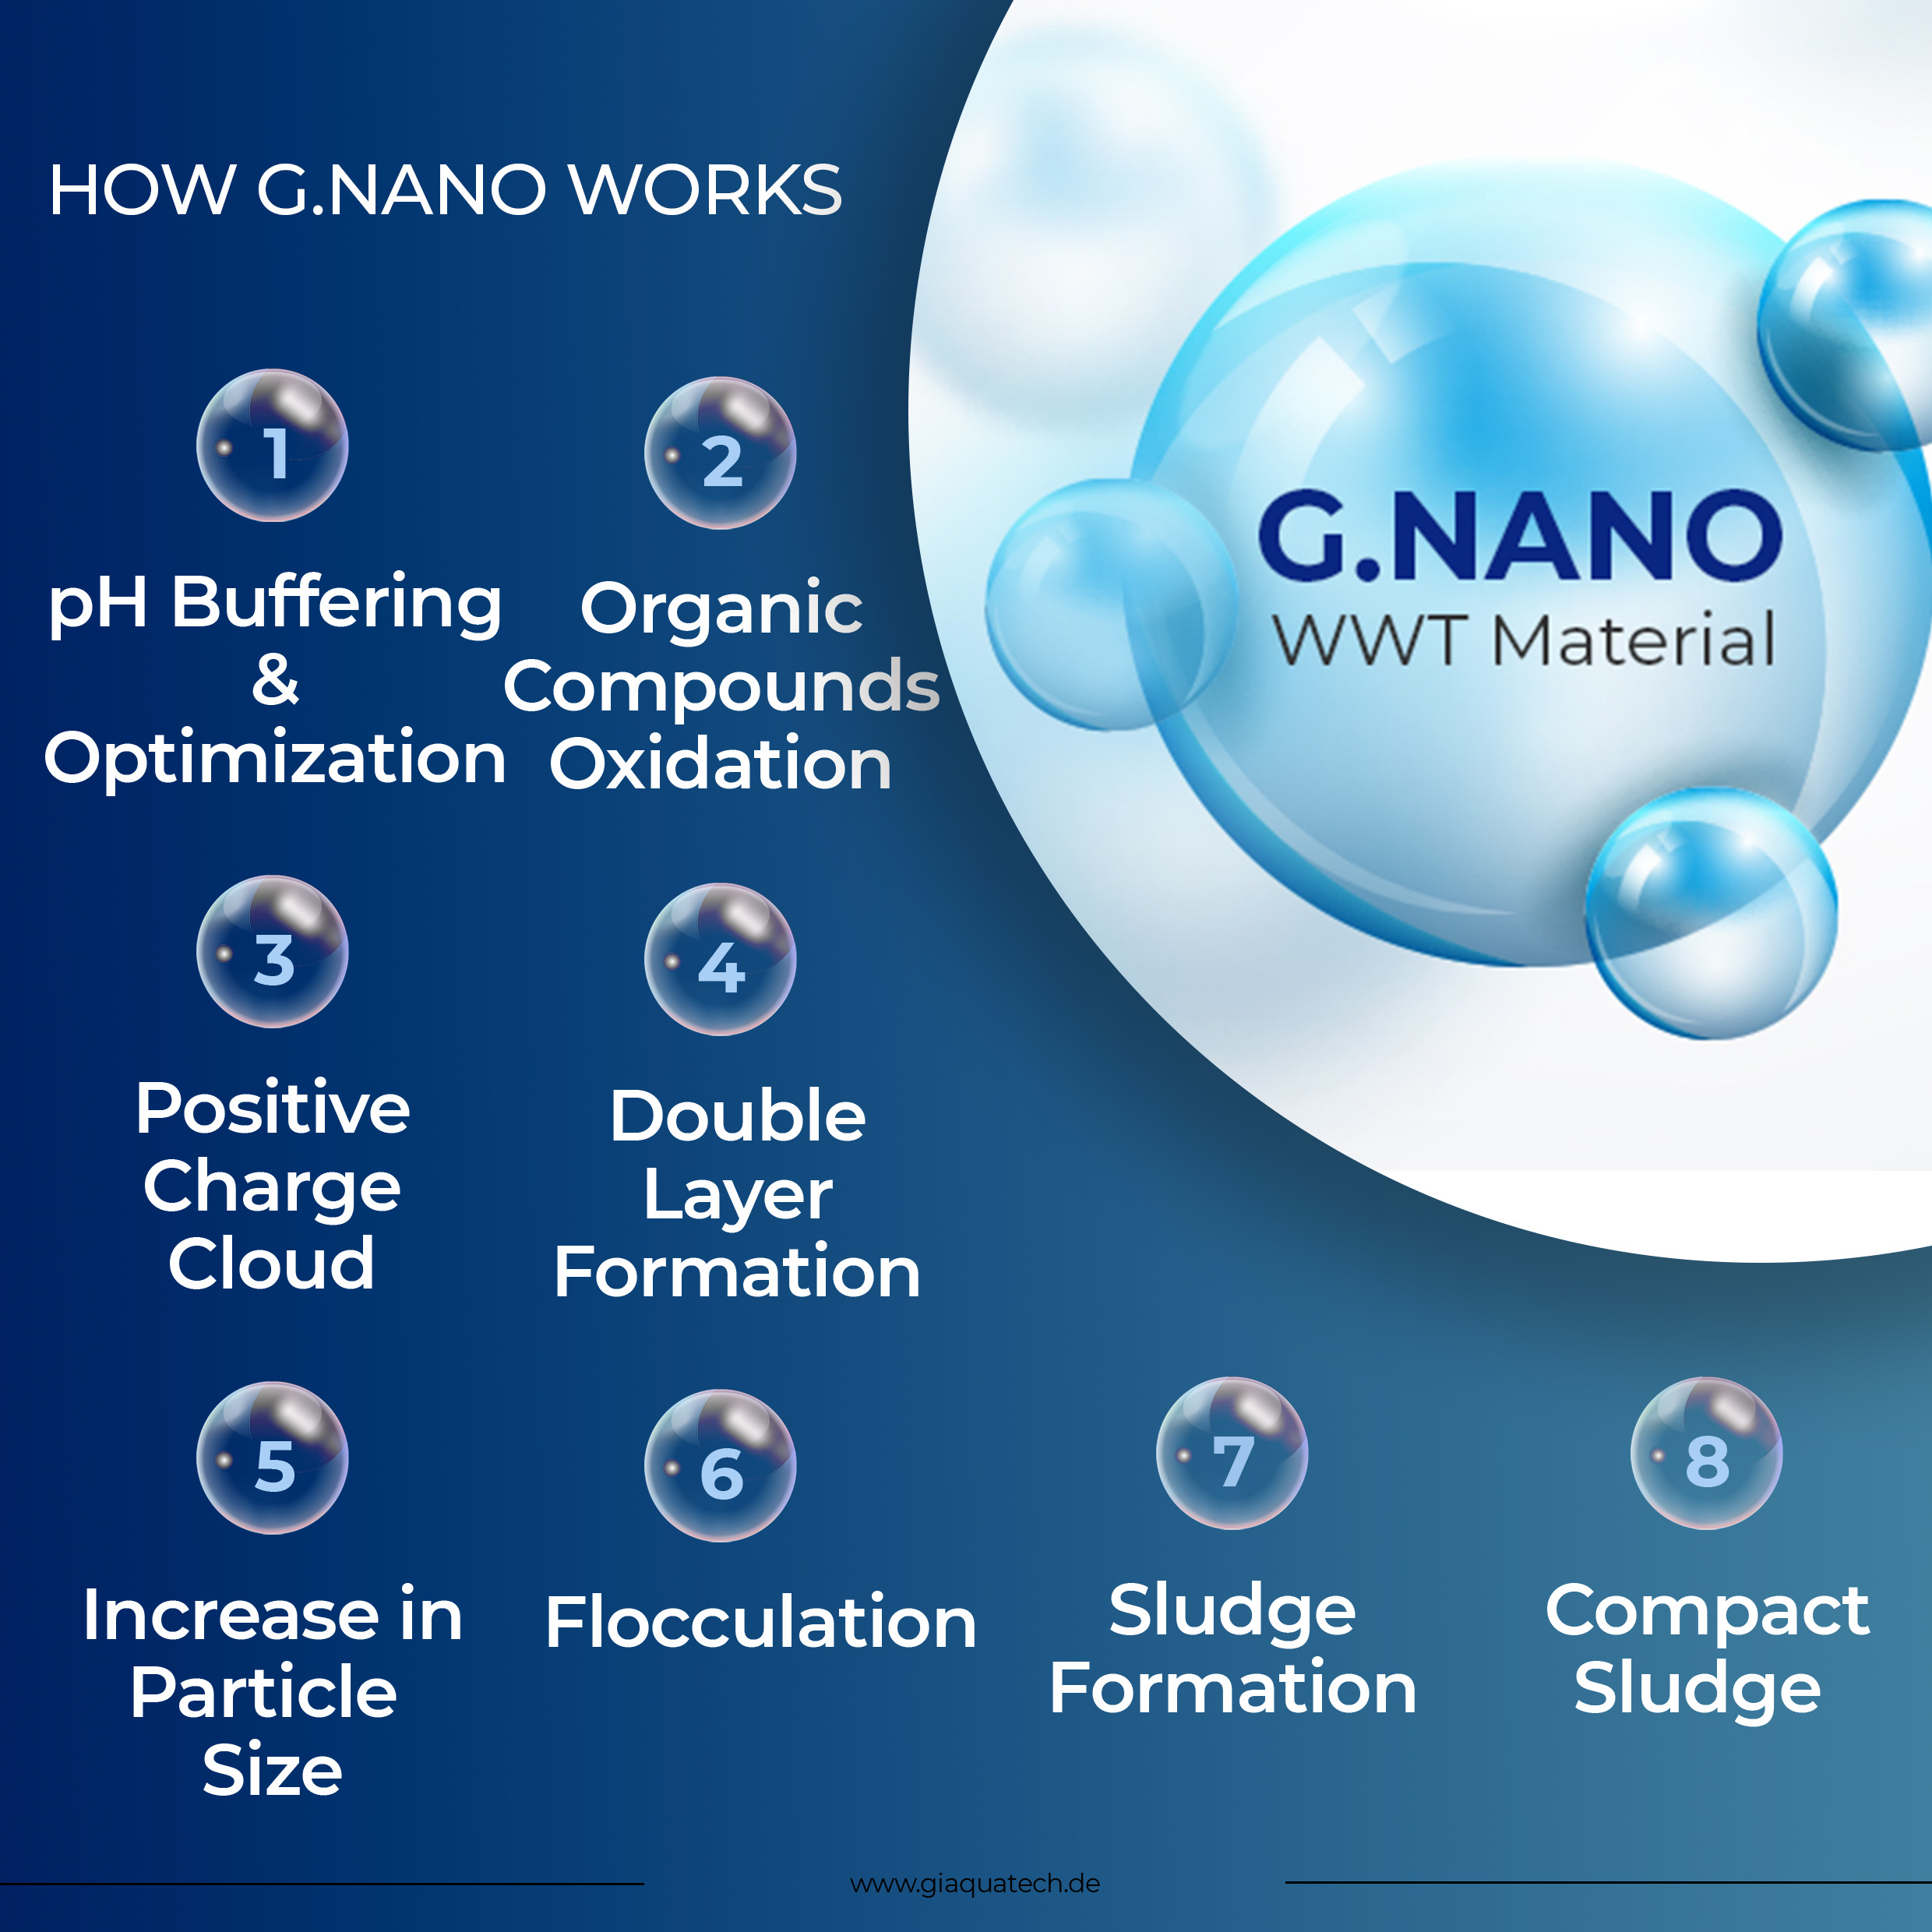 How G.Nano works